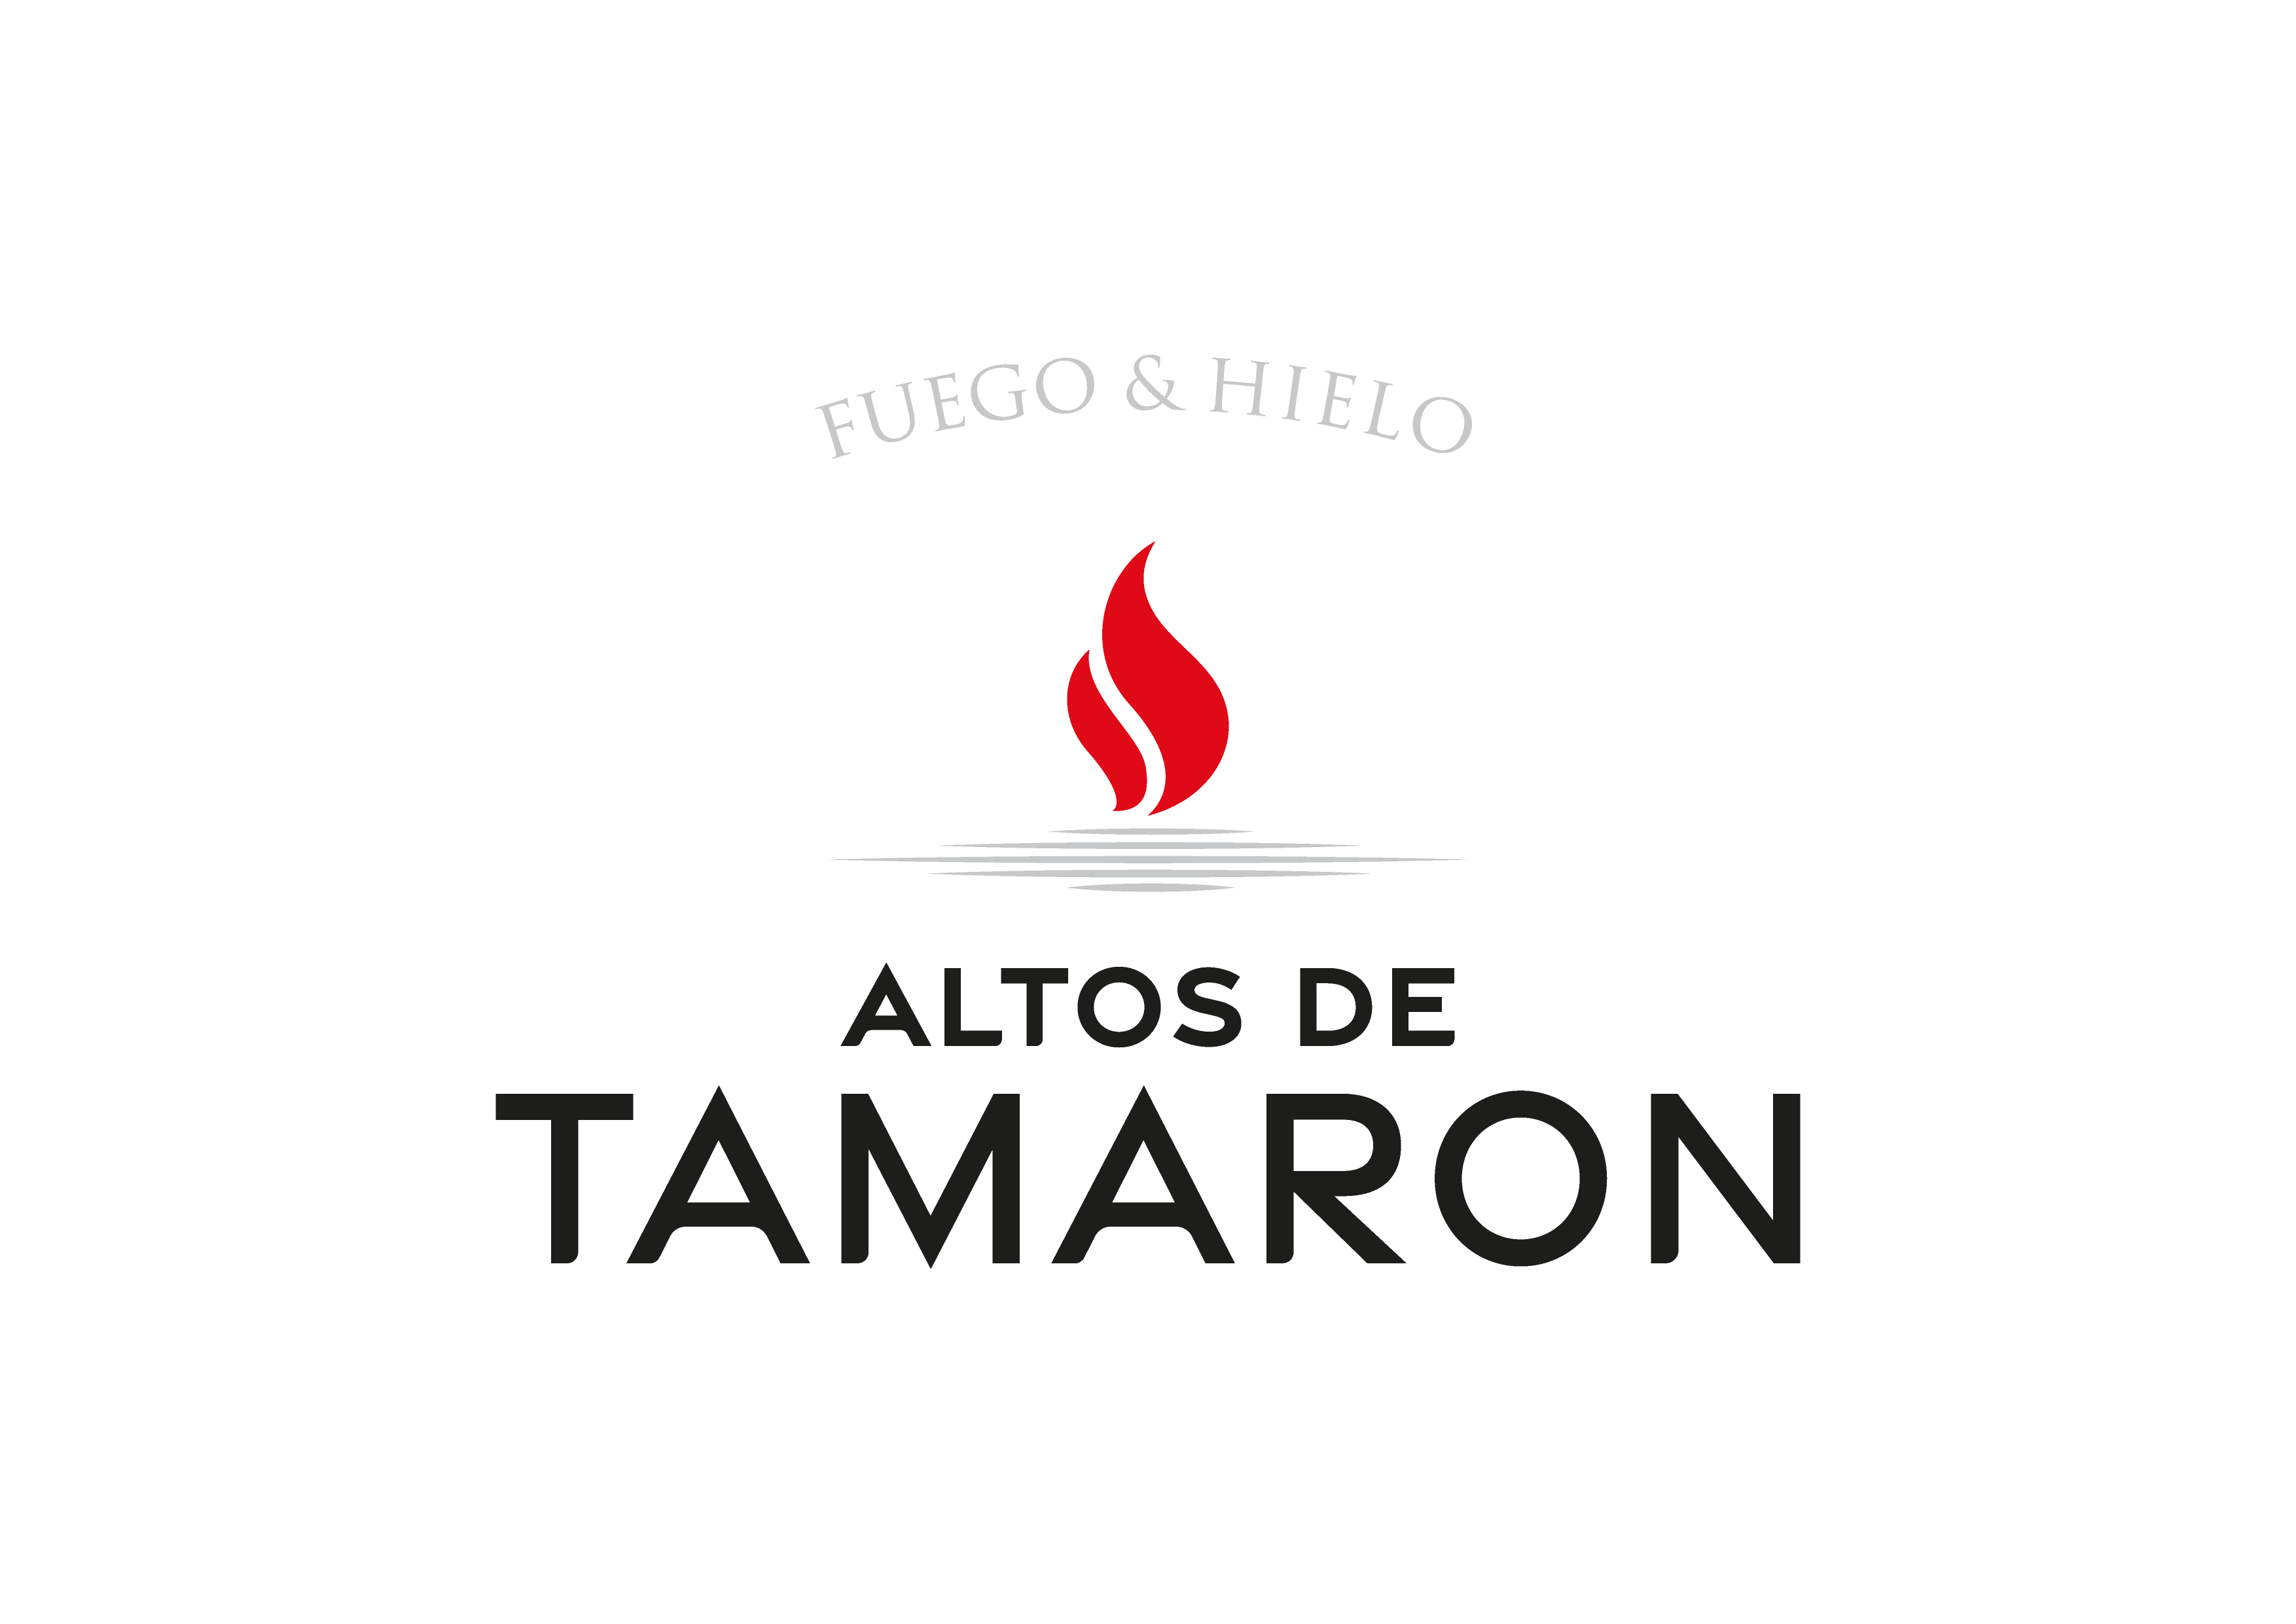 Altos de Tamaron - birthplace of the Pagos del Rey project